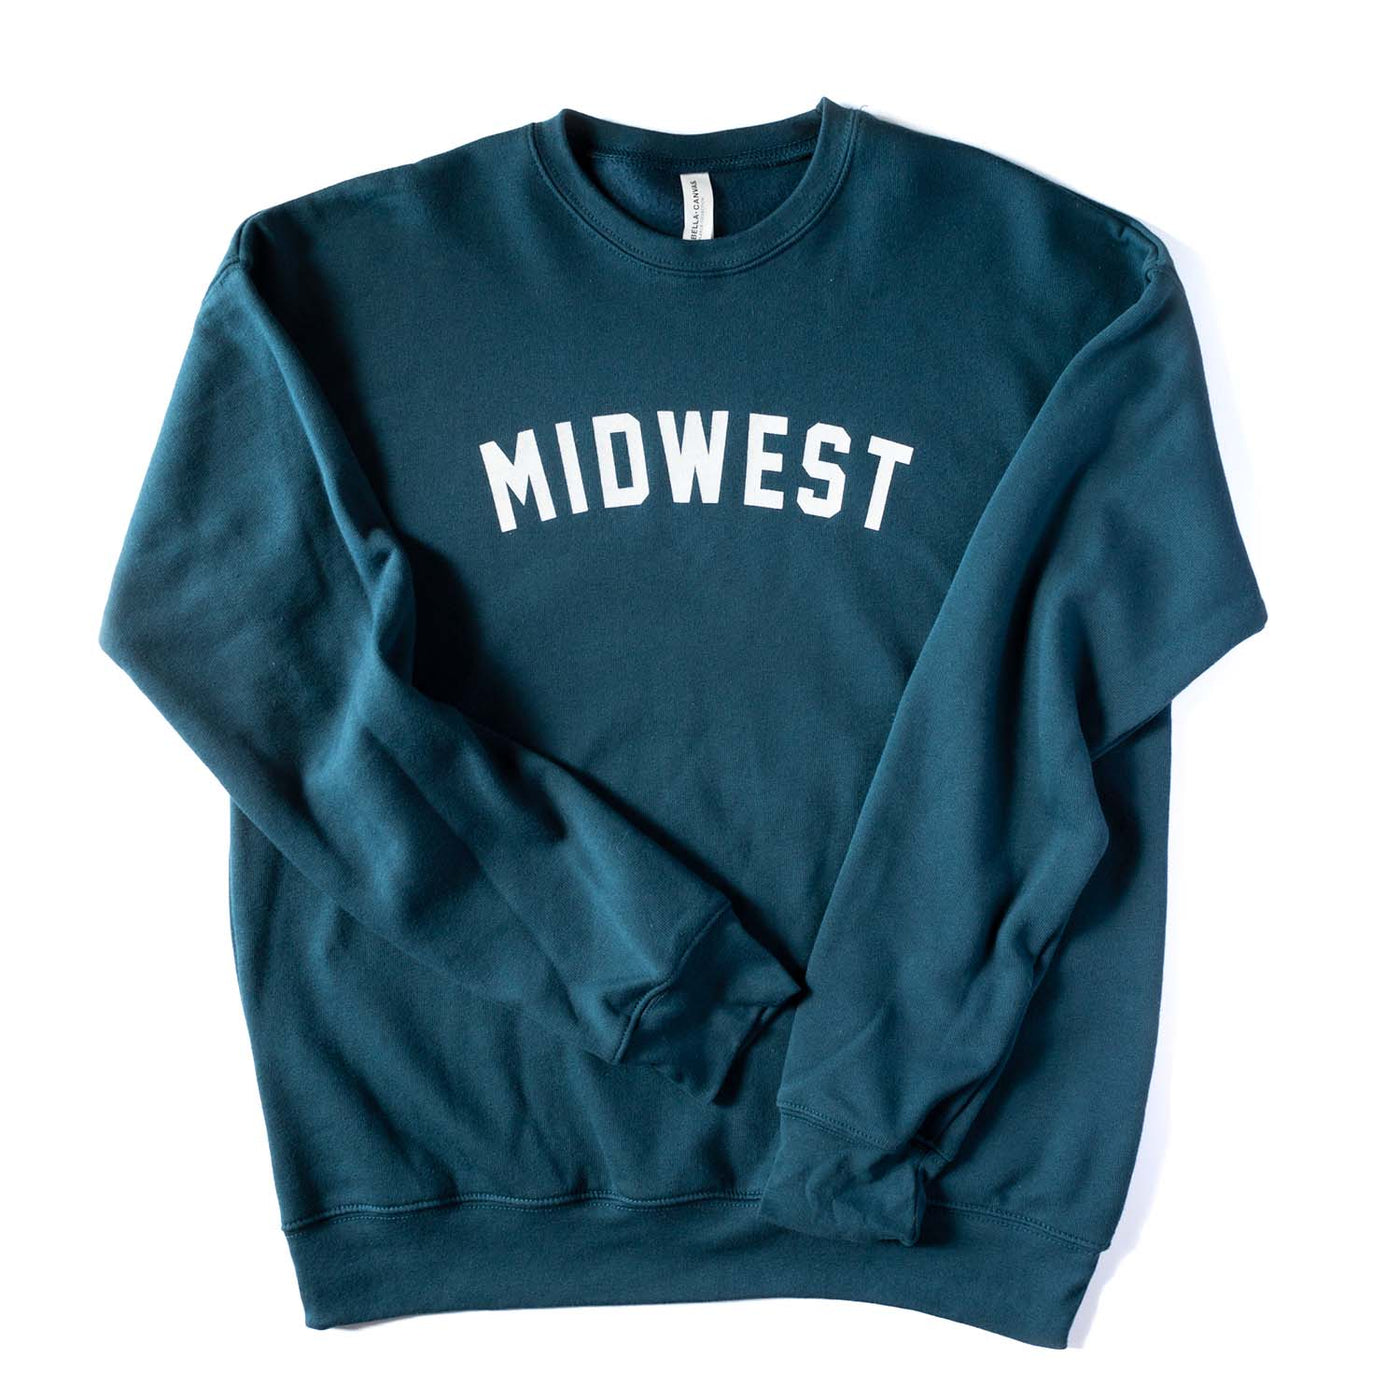 Midwest Block Sweatshirt - Dark Teal